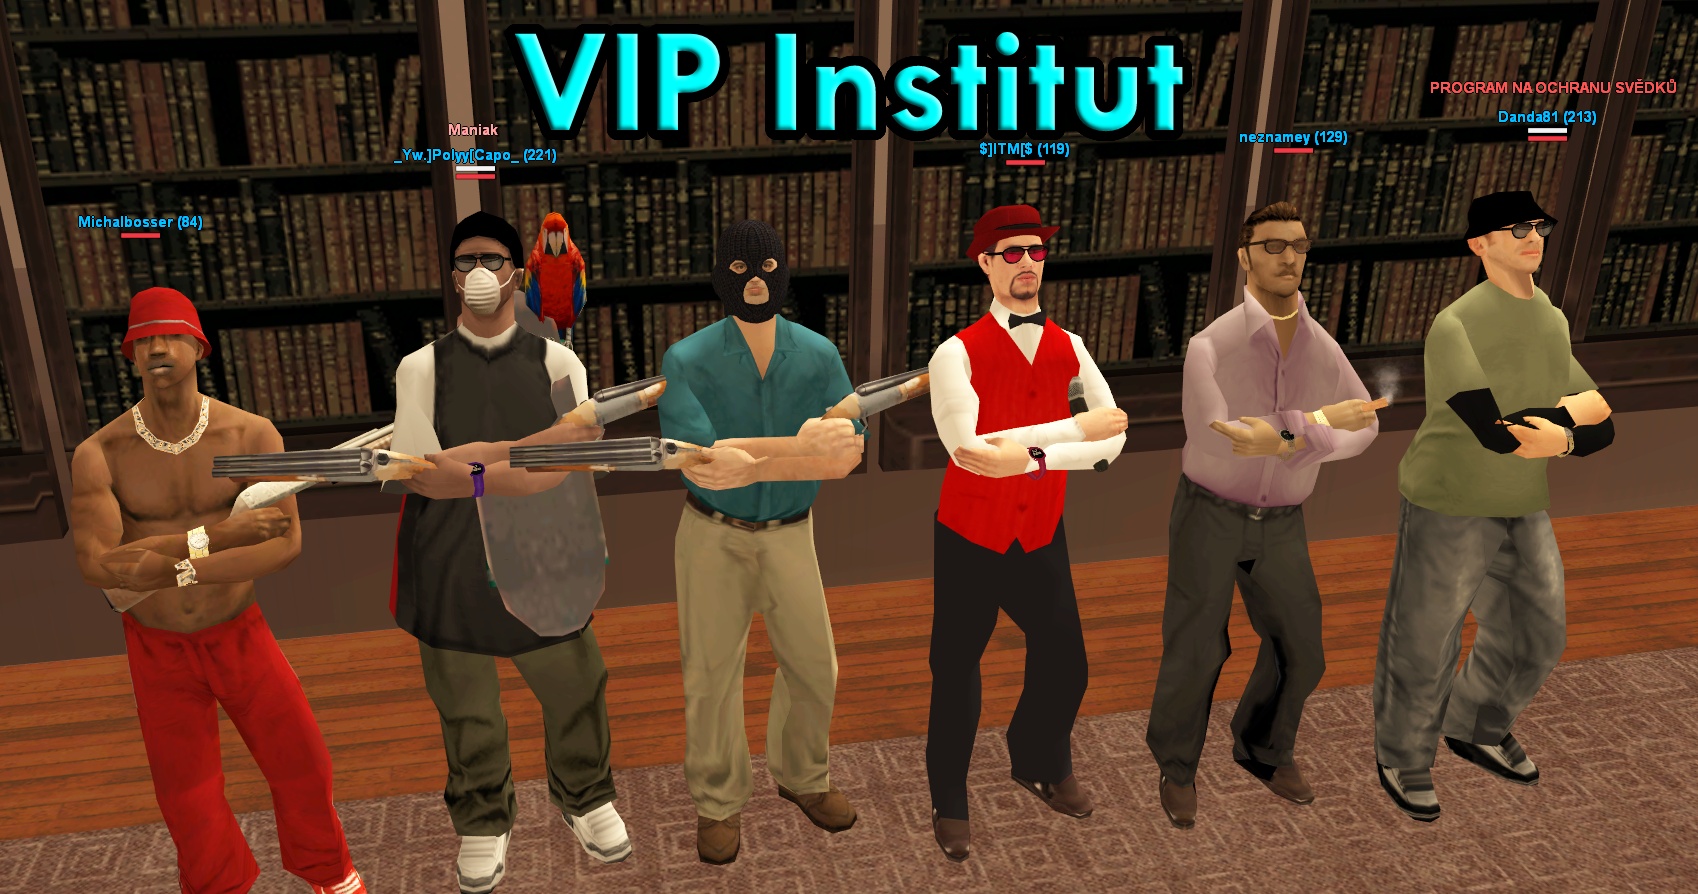 VIP Institut - společná fotka